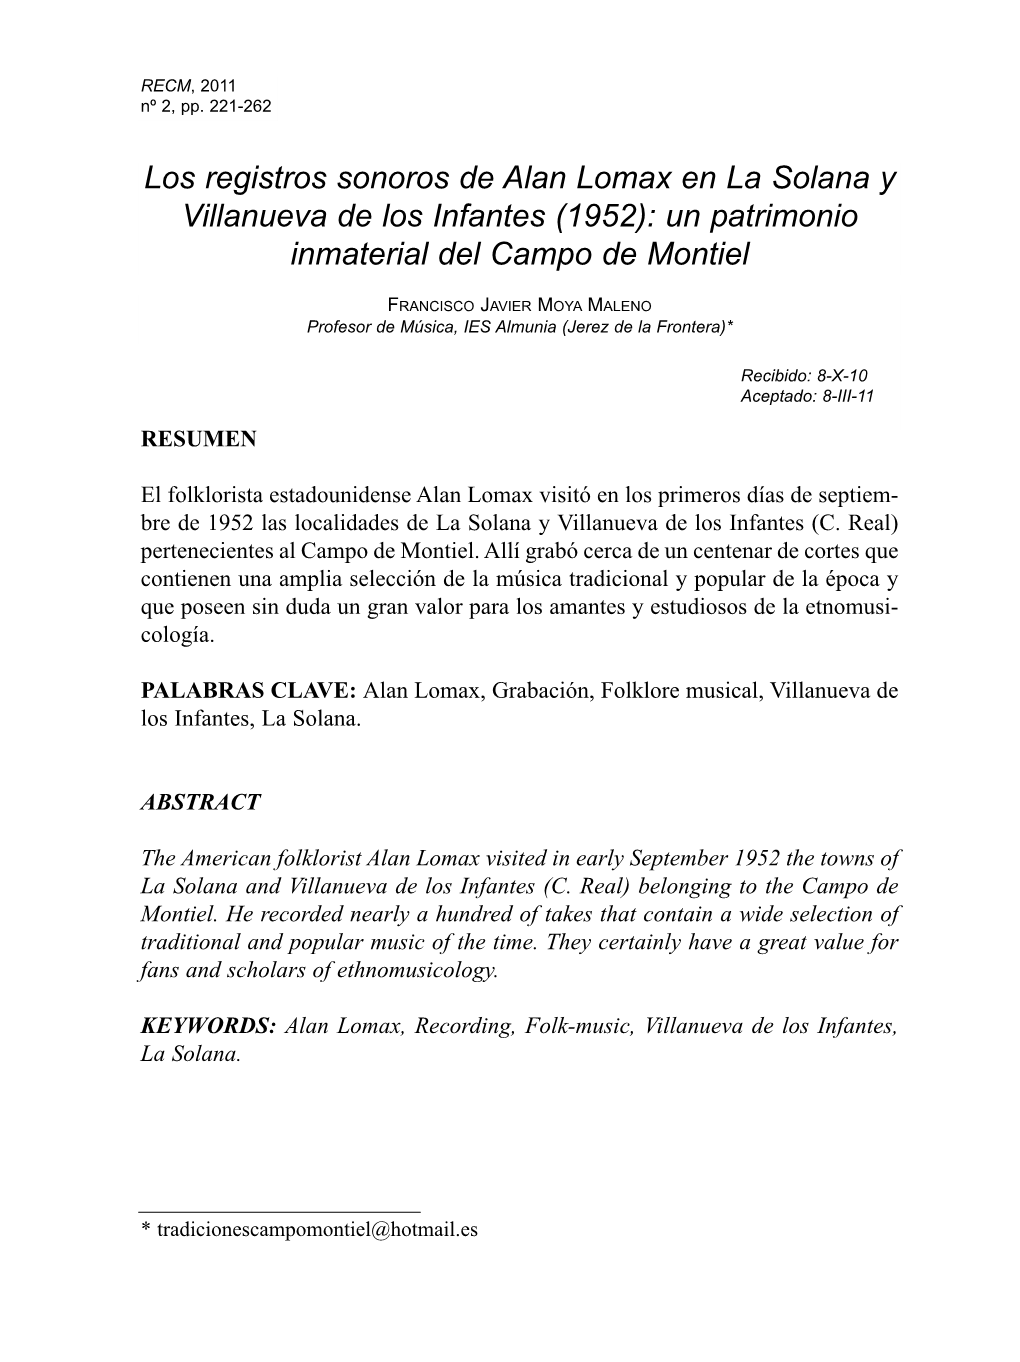 Los Registros Sonoros De Alan Lomax En La Solana Y Villanueva De Los Infantes (1952): Un Patrimonio Inmaterial Del Campo De Montiel